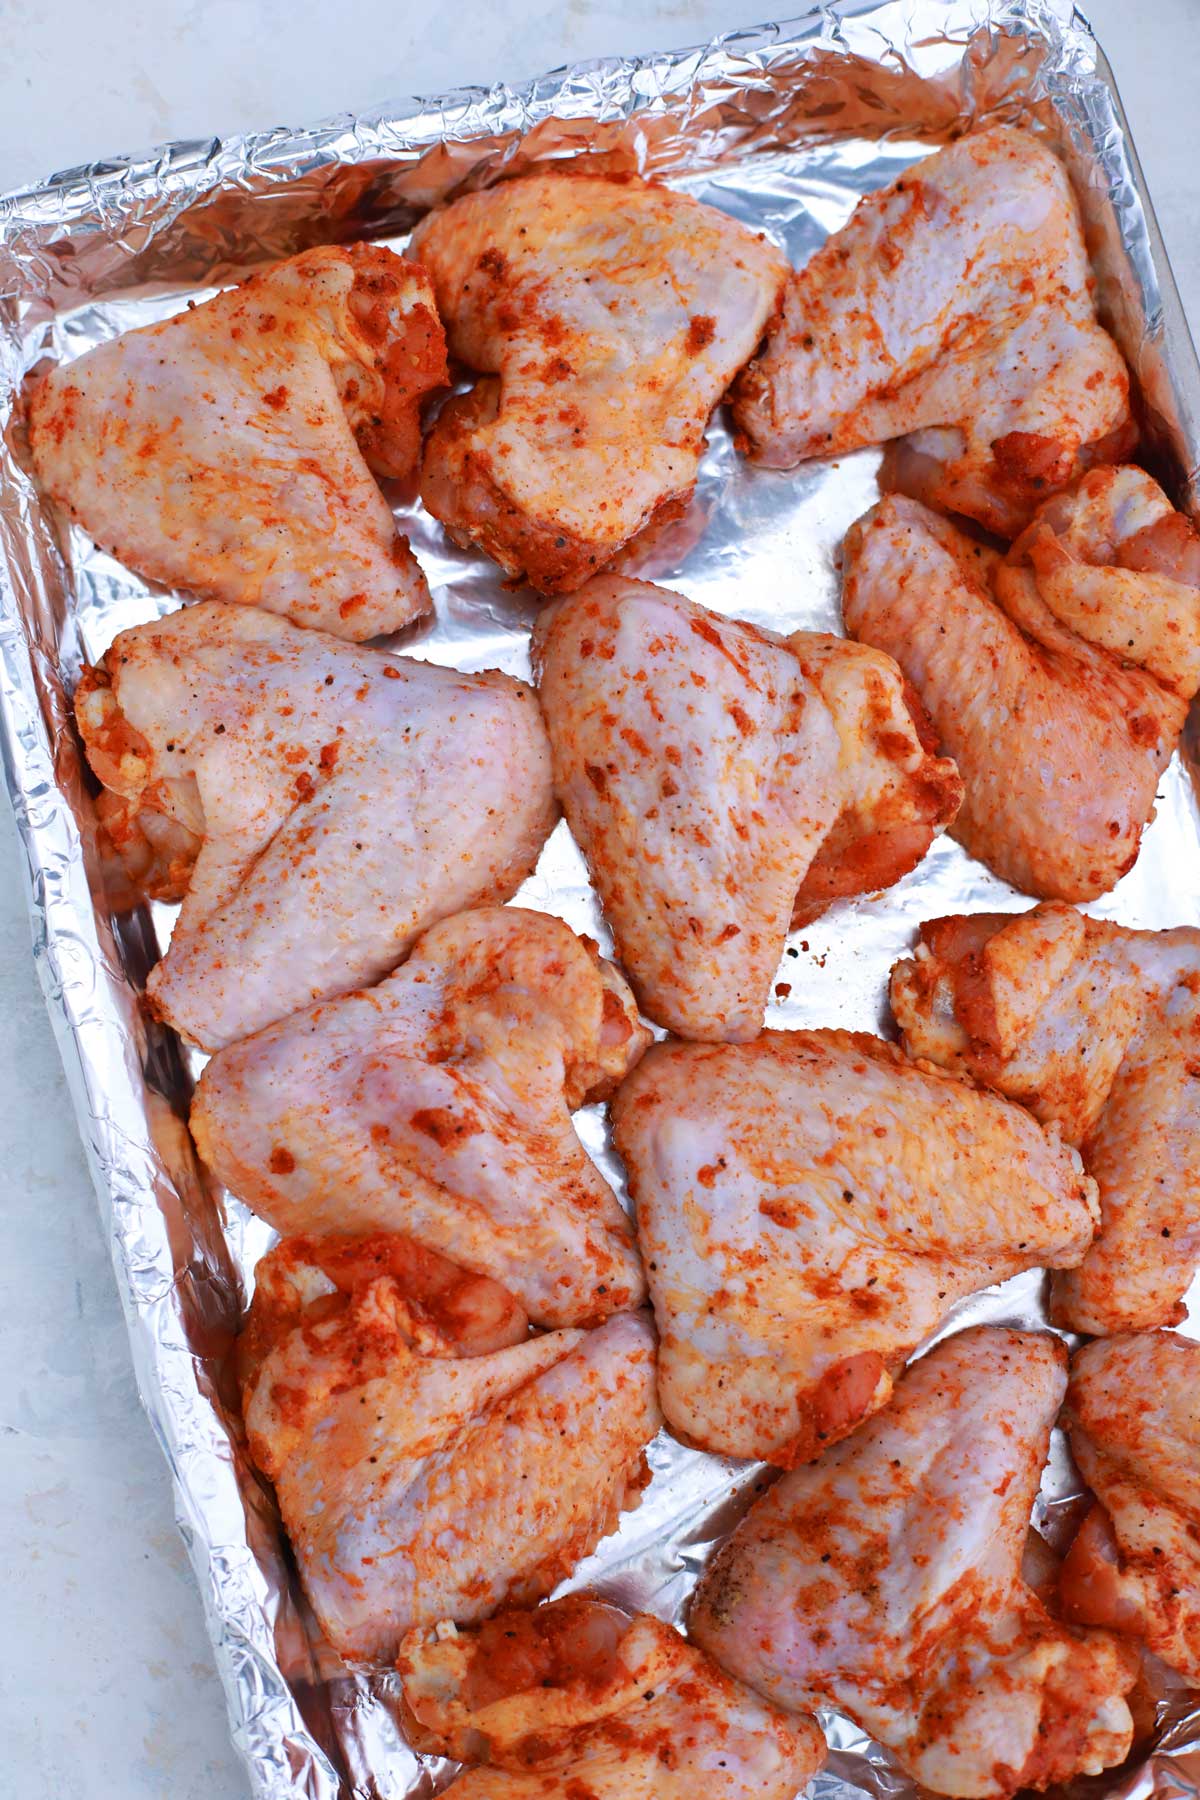 Seasoned chicken wings on baking sheet